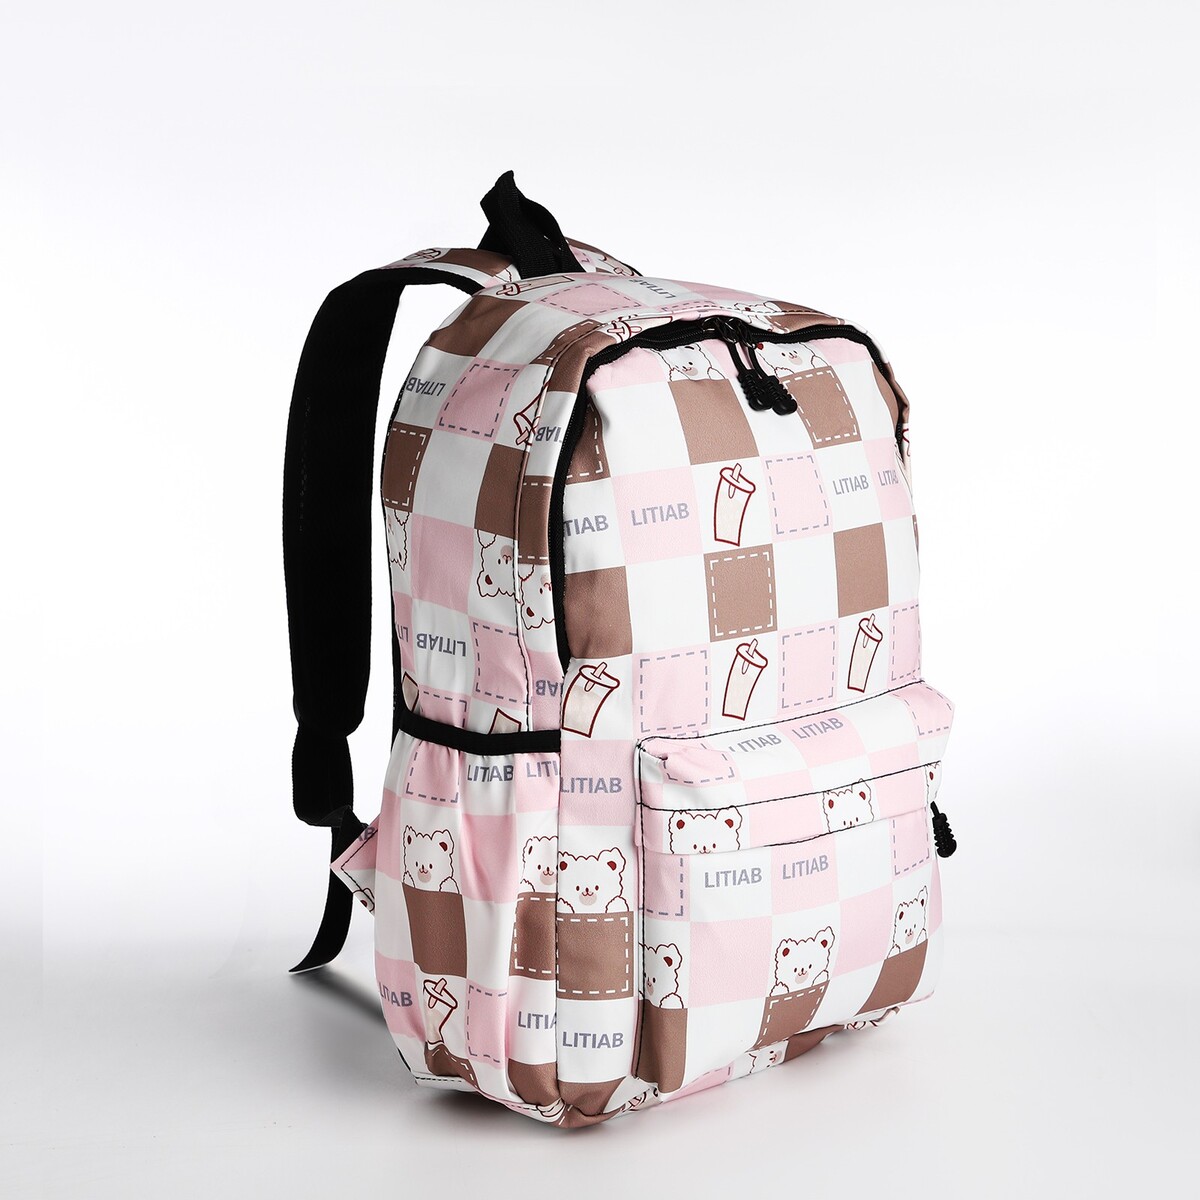 Рюкзак молодежный из текстиля, 3 кармана, цвет бежевый/розовый рюкзак молодежный из текстиля 3 кармана белый розовый